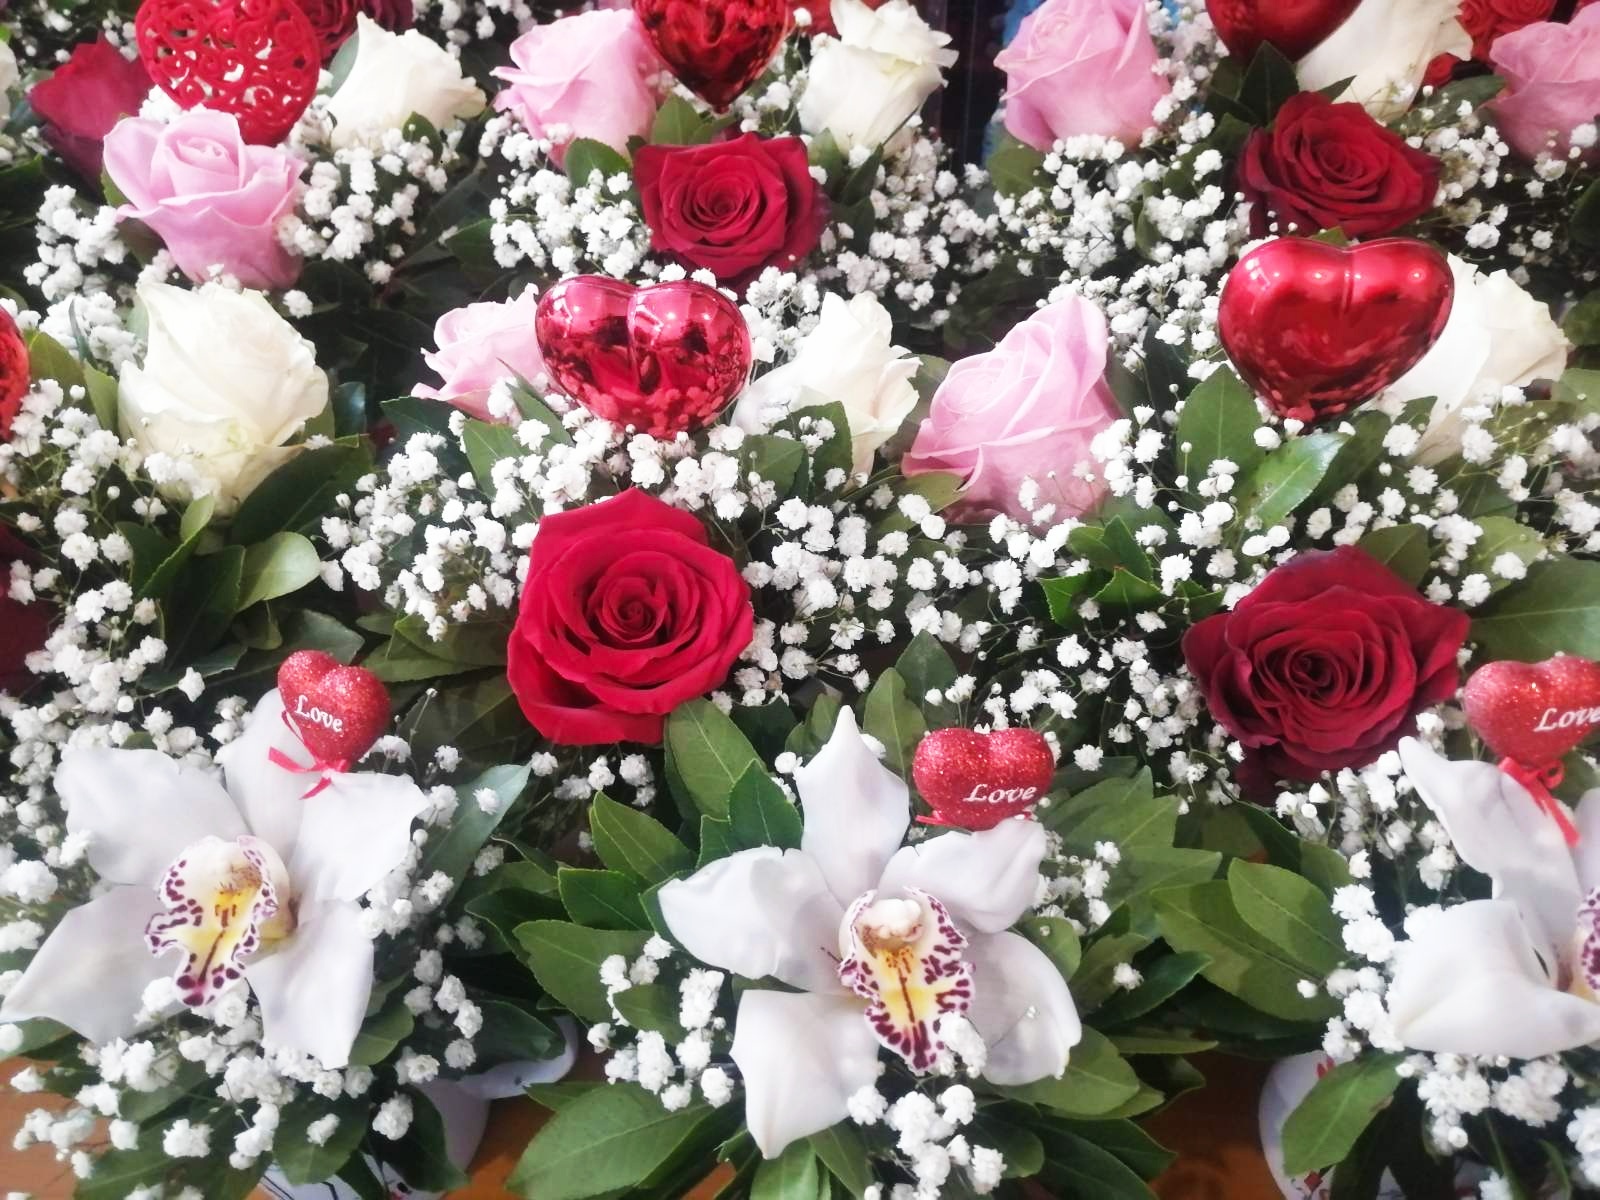 Γιορτή Αγίου Βαλεντίνου στη Θεσσαλονίκη: 300.000 τριαντάφυλλα στα ανθοπωλεία